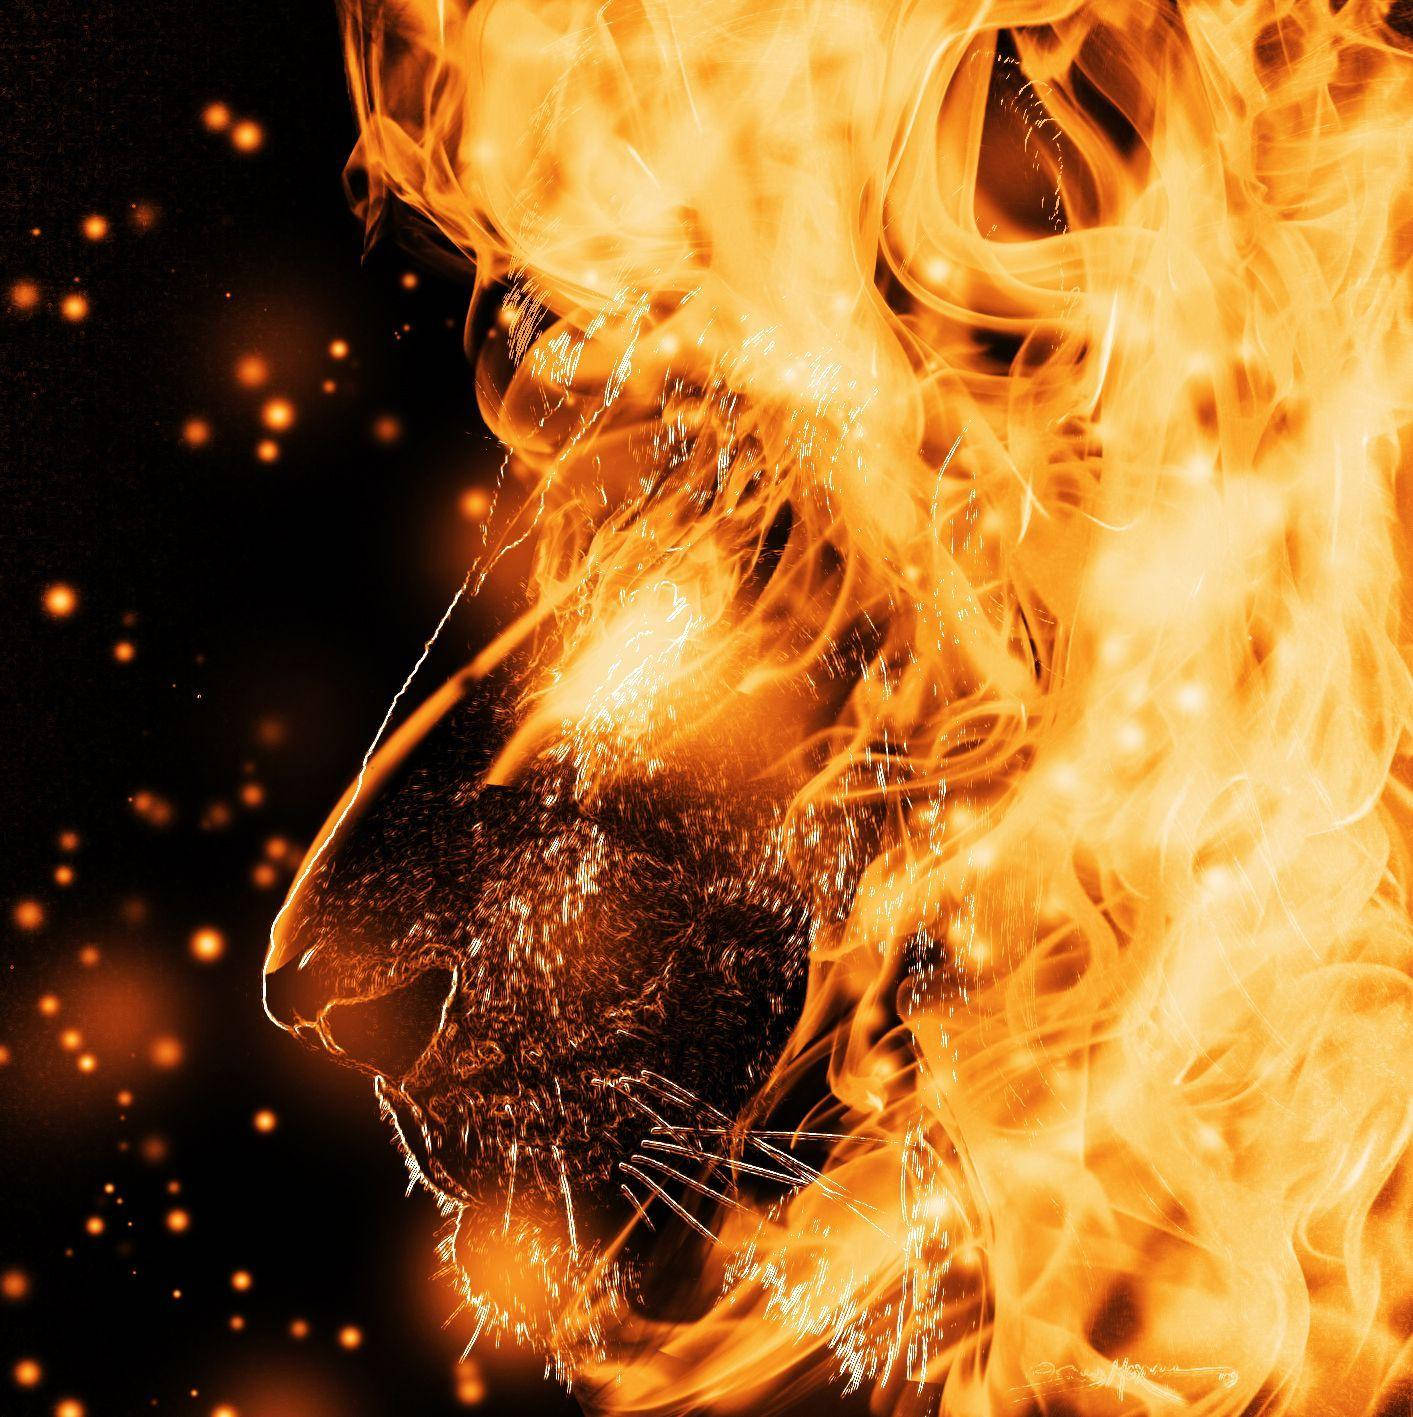 Majestic Fire Lion Roaring Against a Dark Backdrop Wallpaper